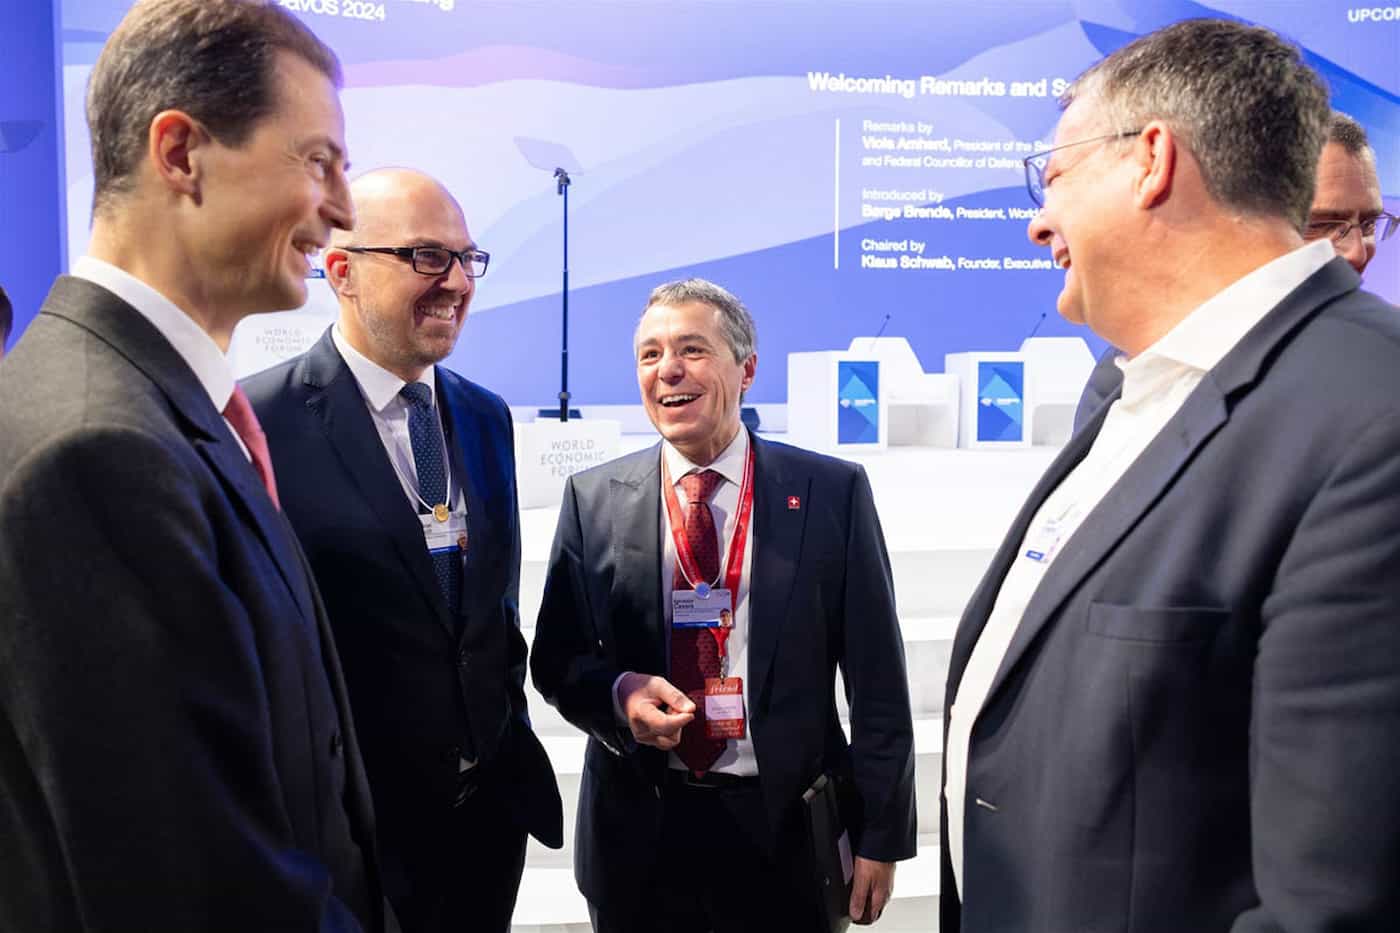 S.D. Erbprinz Alois von und zu Liechtenstein, Regierungschef Daniel Risch und Bundesrat Ignazio Cassis im Gespräch mit einem weiteren Teilnehmer.